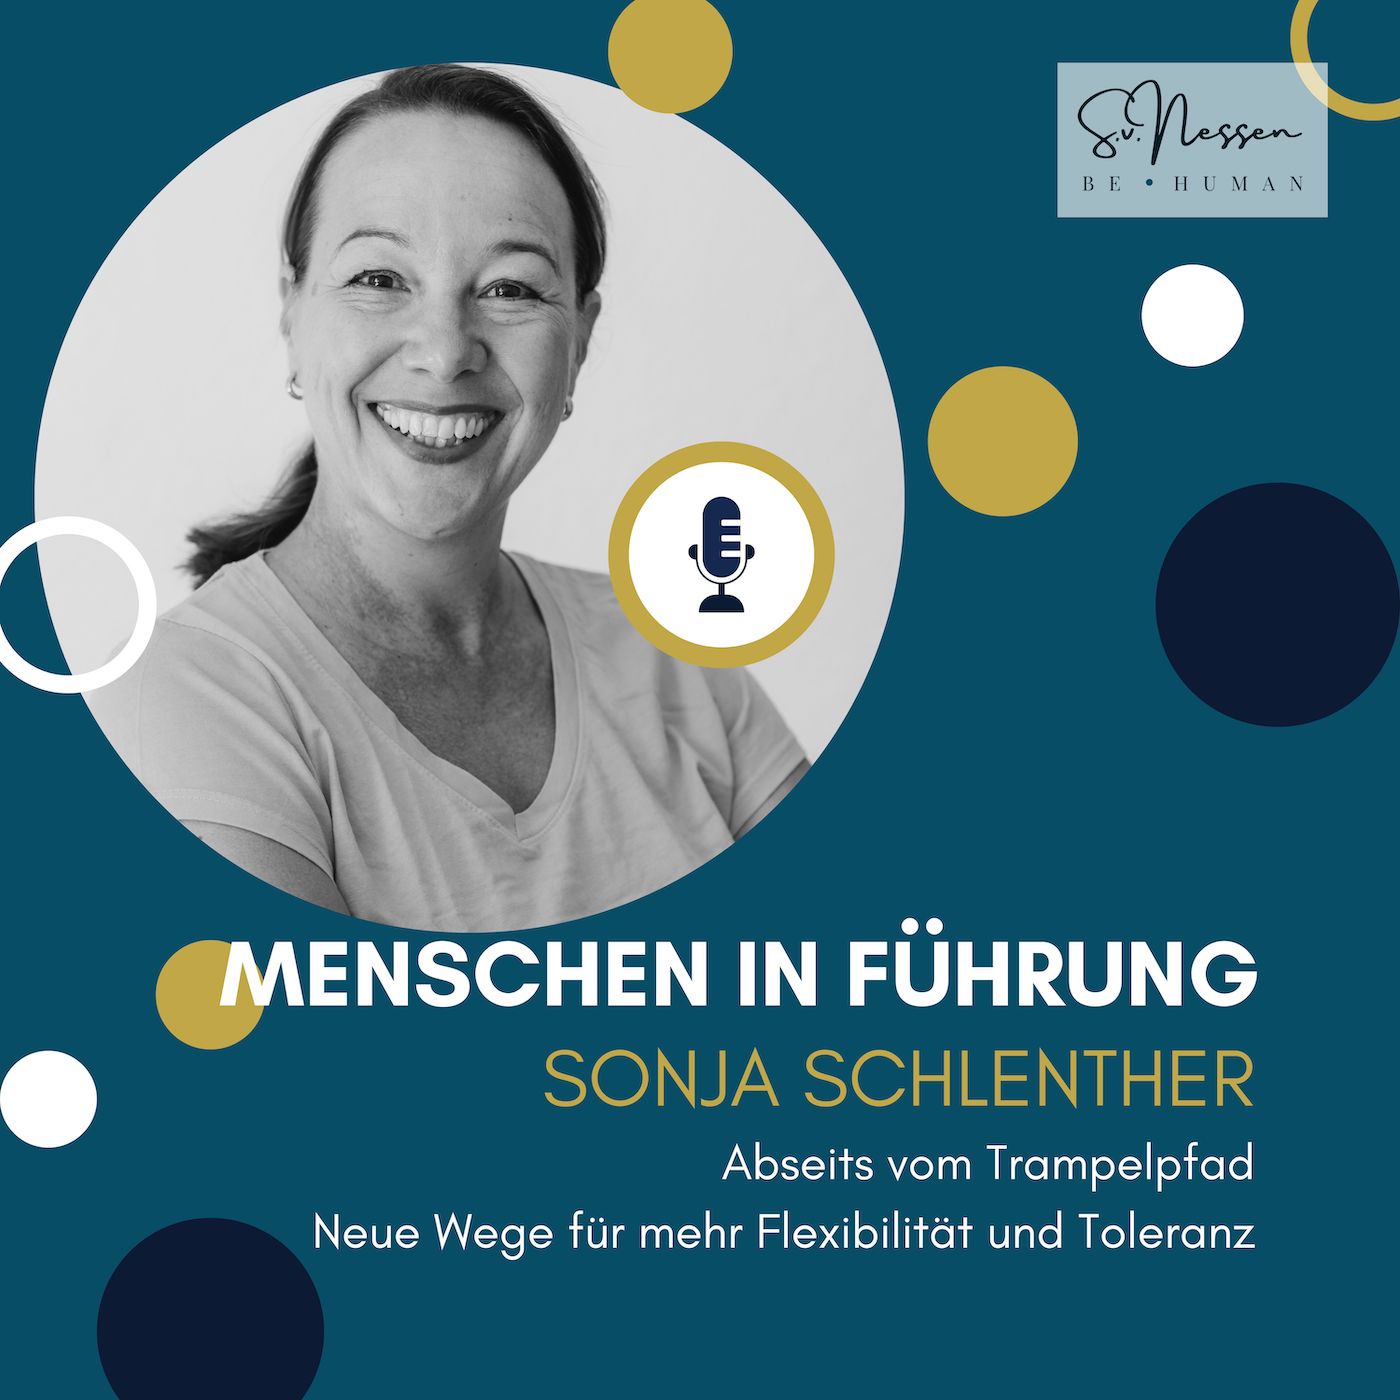 Abseits vom Trampelpfad – neue Wege für mehr Flexibilität und Toleranz mit Sonja Schlenther